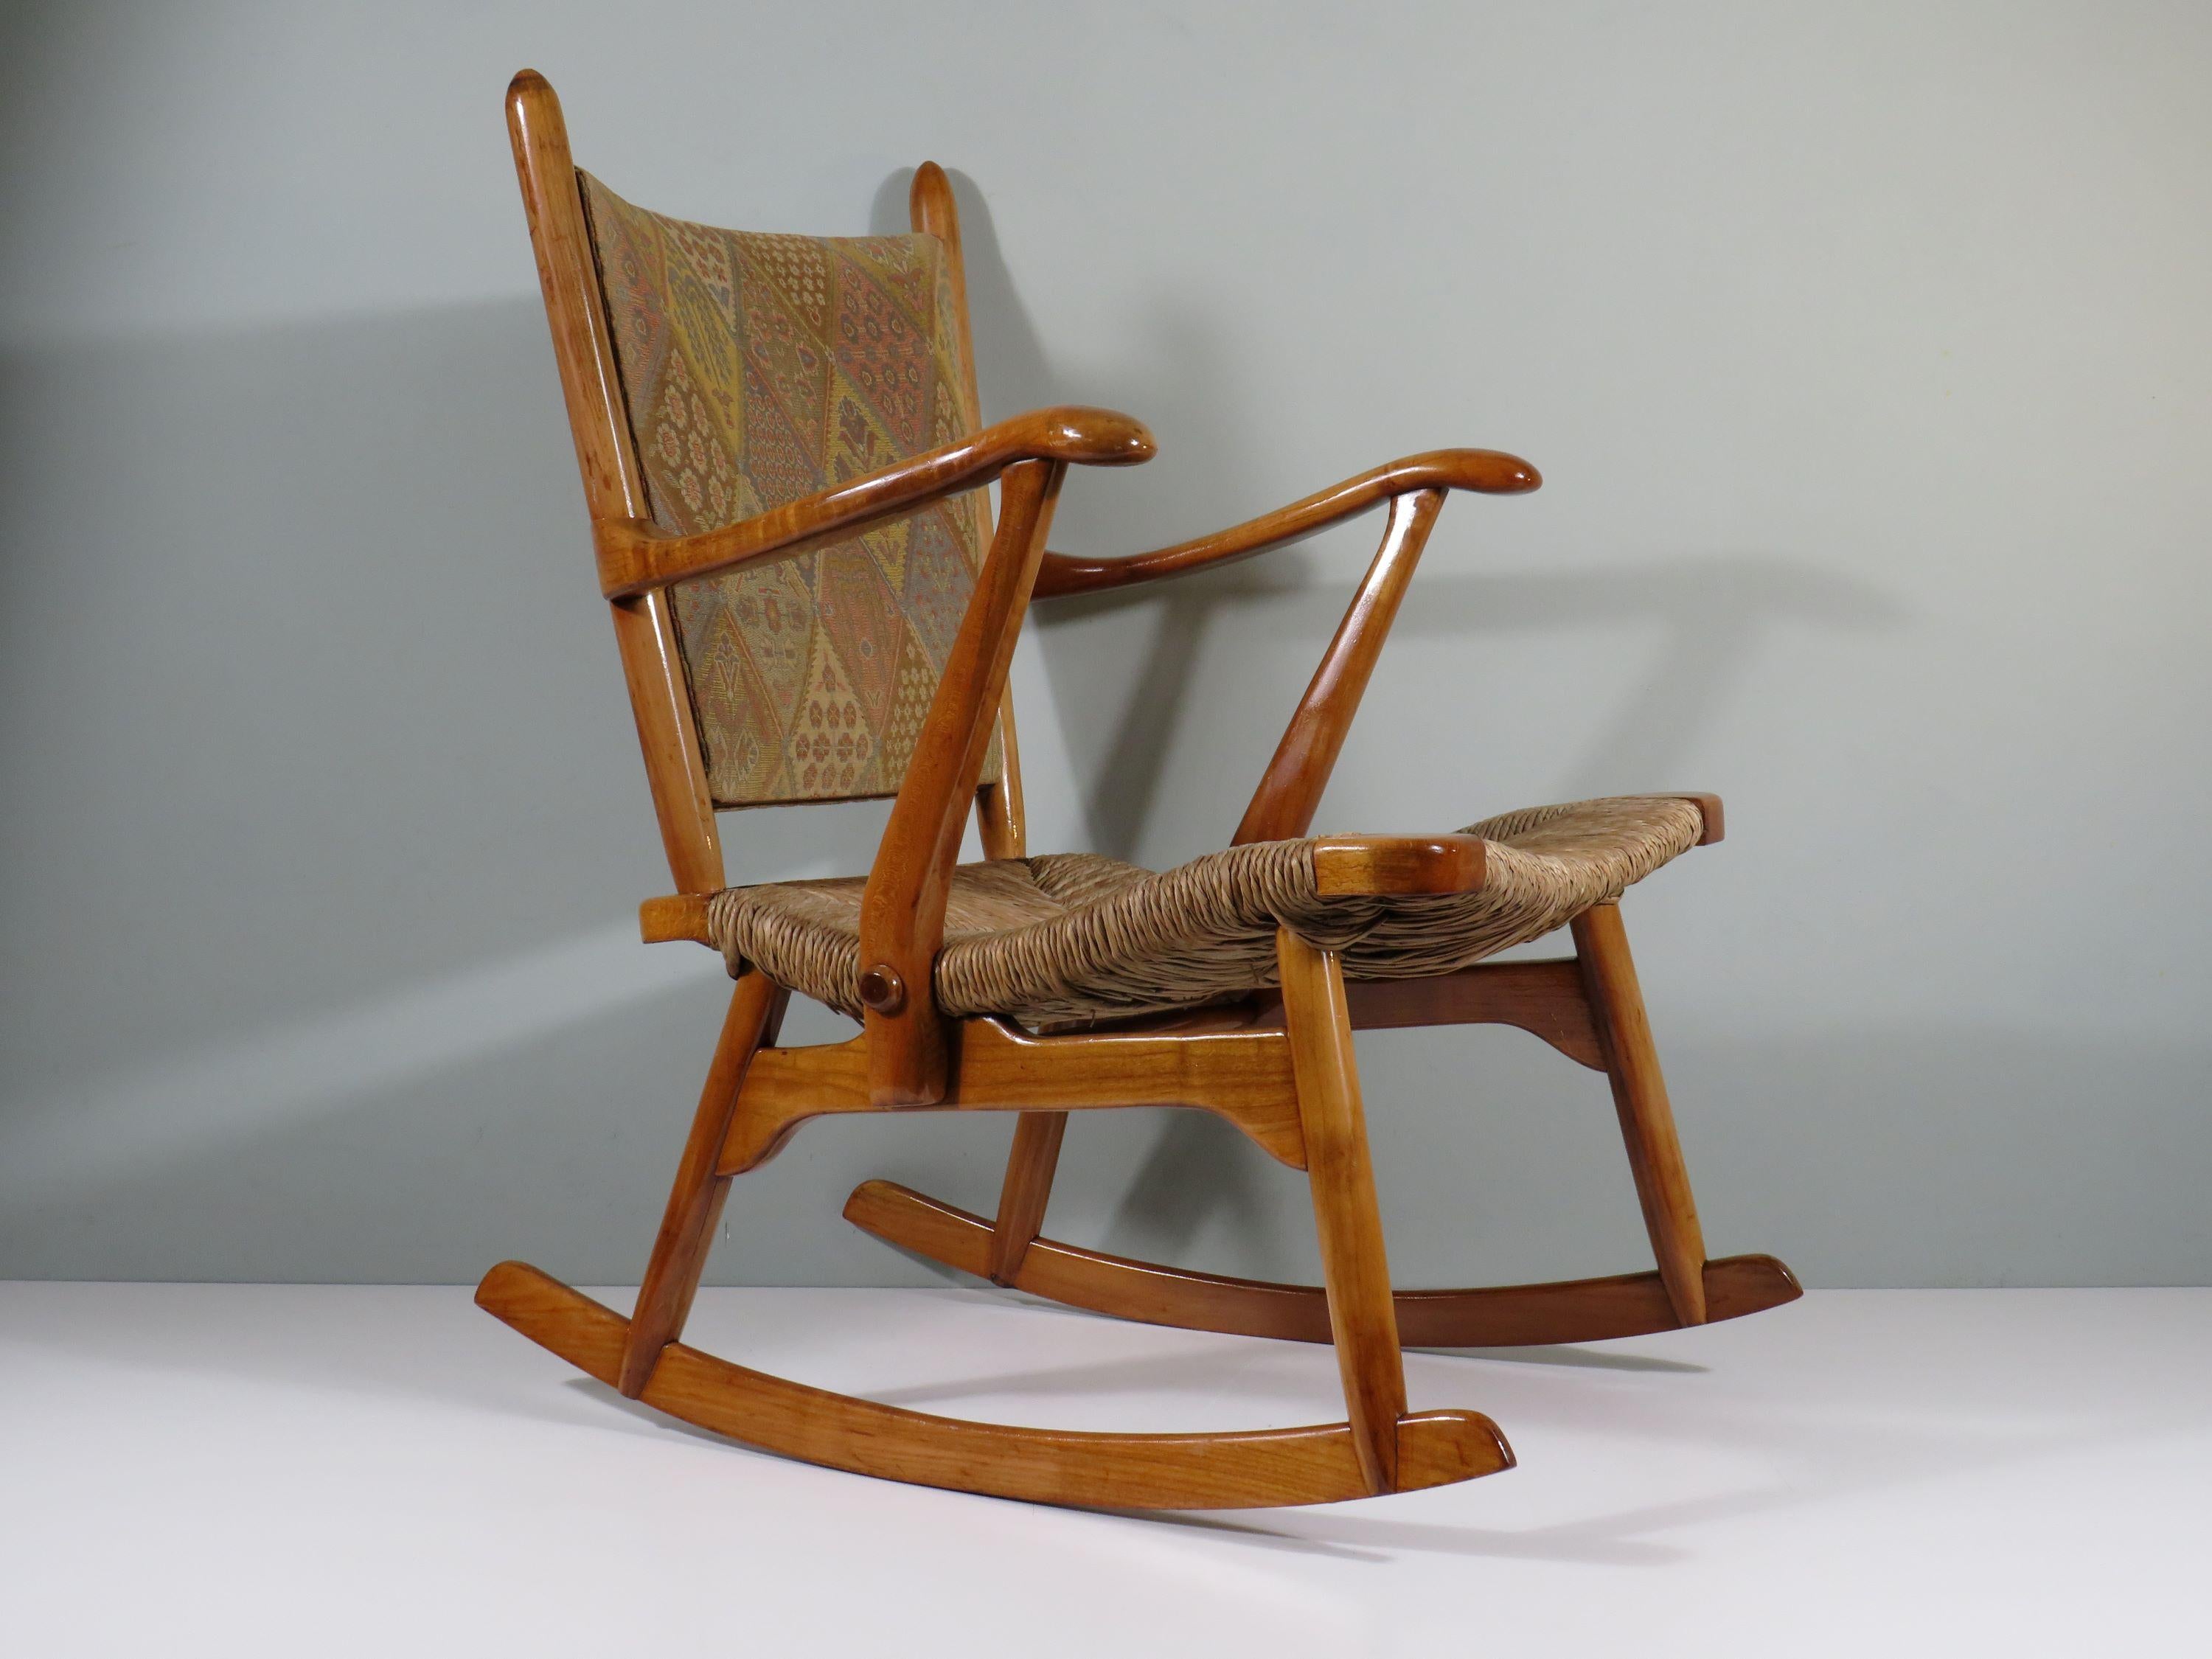 Schaukelstuhl aus lackiertem Holz mit handgeflochtenem Sitz aus Binsen und gepolsterter Rückenlehne mit Originalstoff.
Der organisch gestaltete Stuhl ist in gutem und stabilem Zustand.
Die Sitzhöhe beträgt 40 cm an der Vorderseite des Sitzes und 34